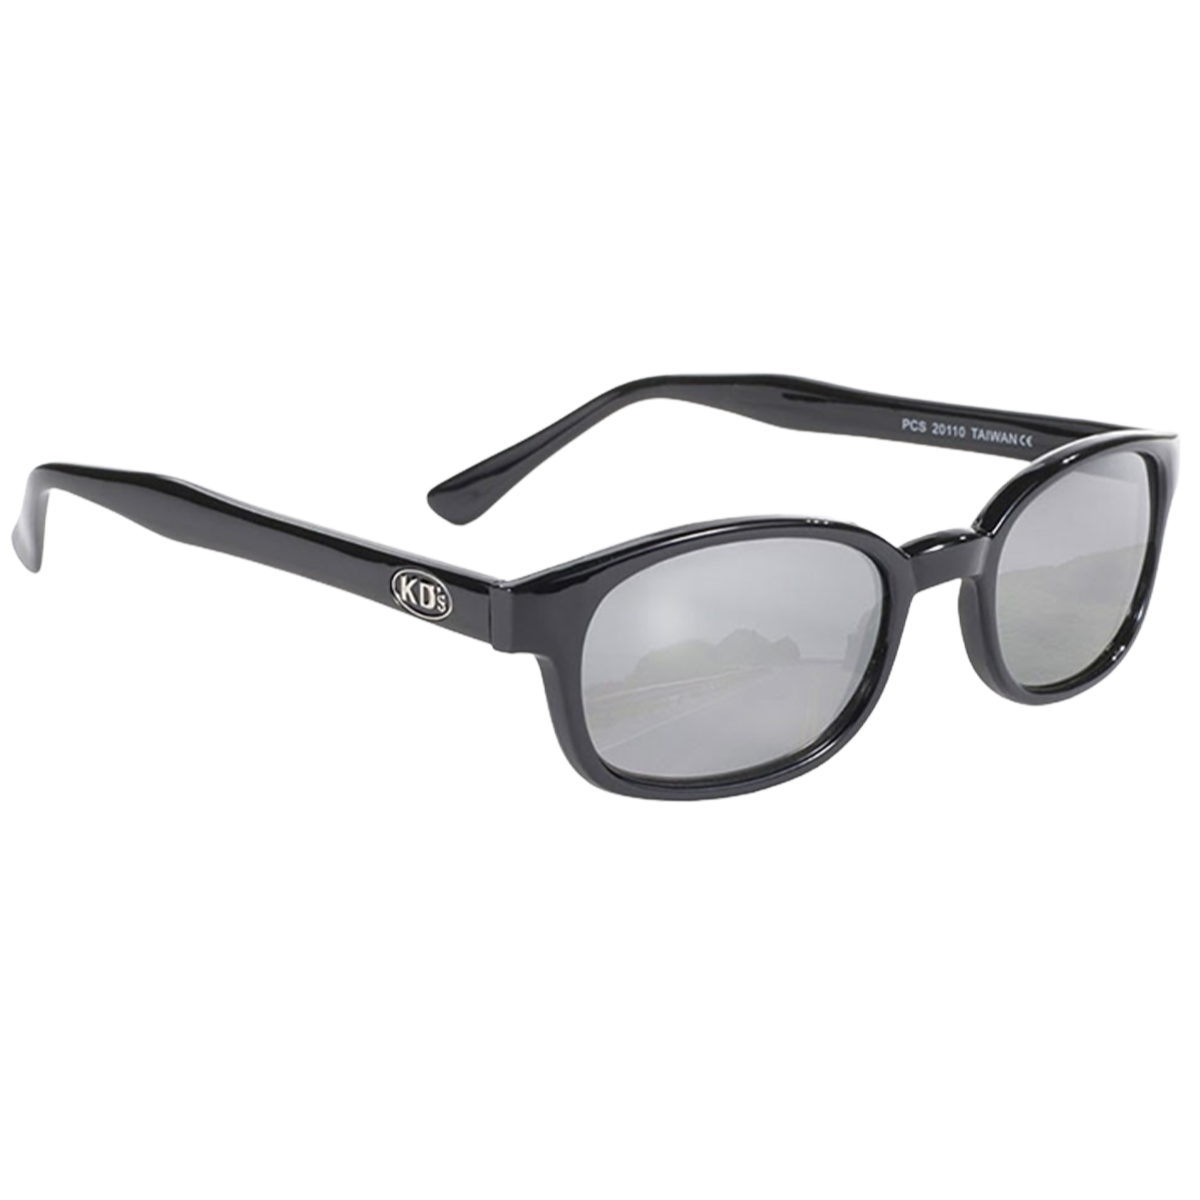 Sunglasses KD's 20110 - silver mirror lenses